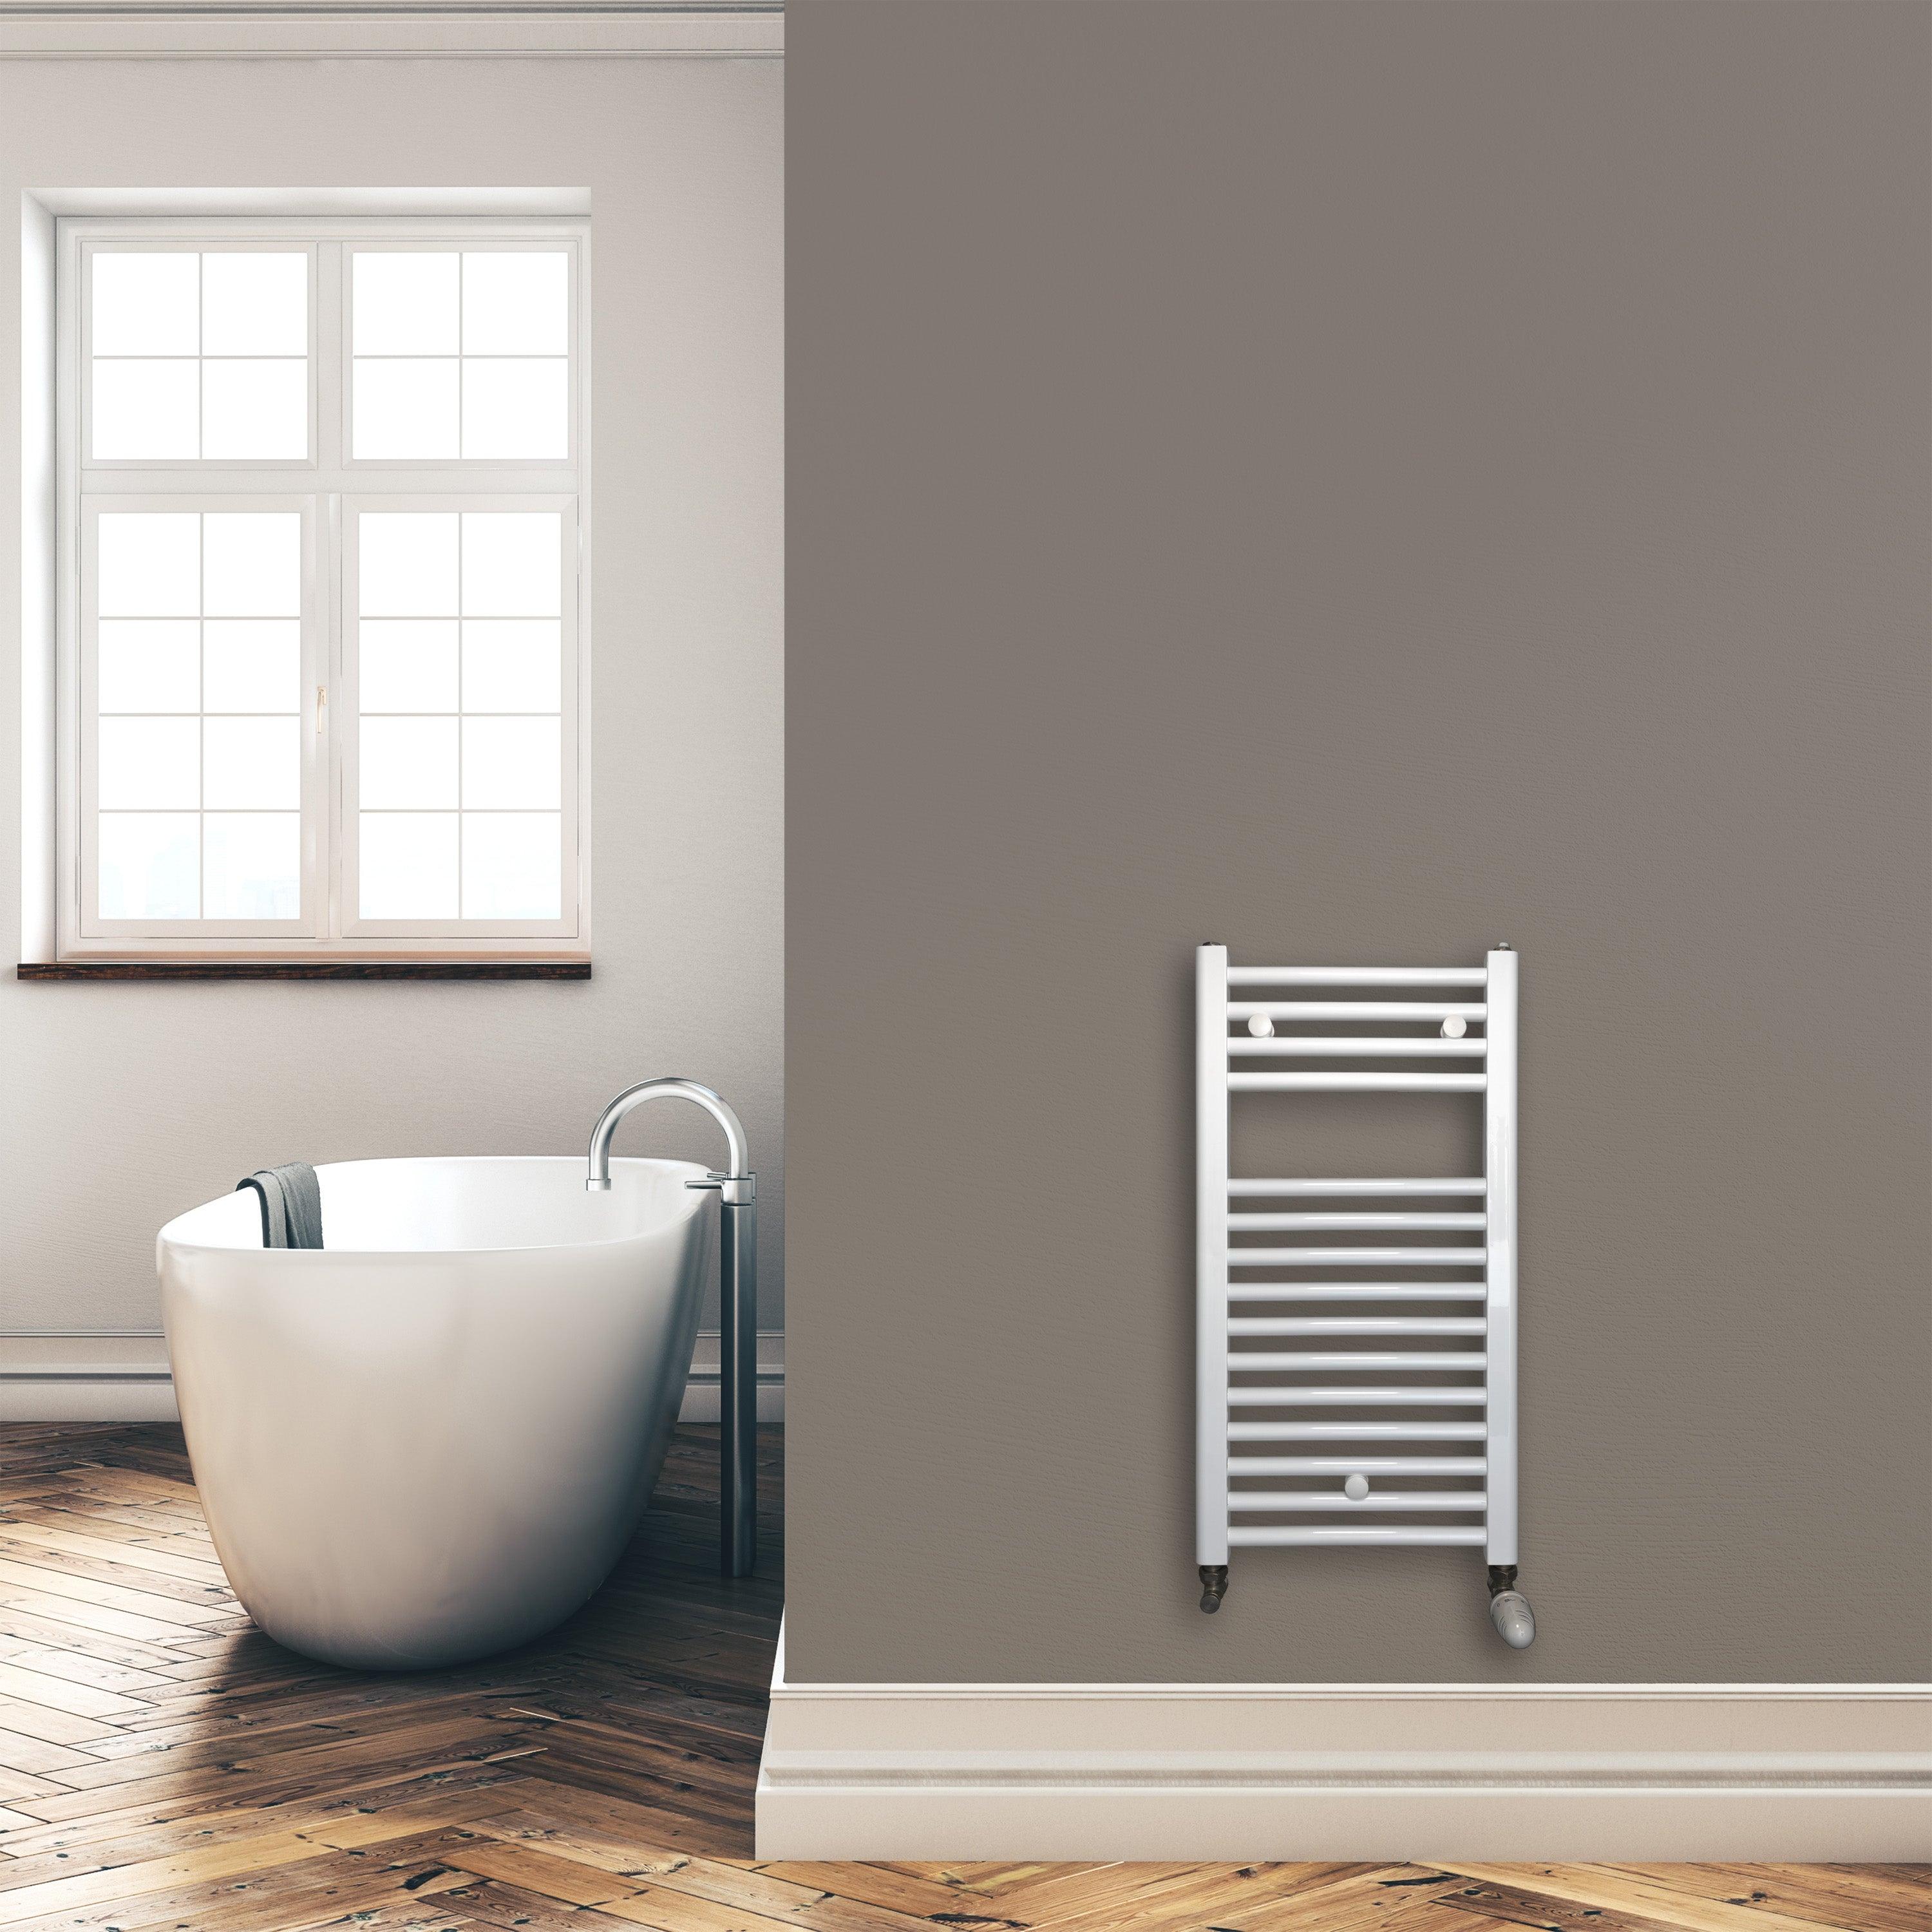 Badheizkörper 764 x 400 mm gerade mit Standardanschluss Handtuchhalter Badezimmer Heizung Handtuchwärmer weiß Montagebeispiel - heizkoerper.shop